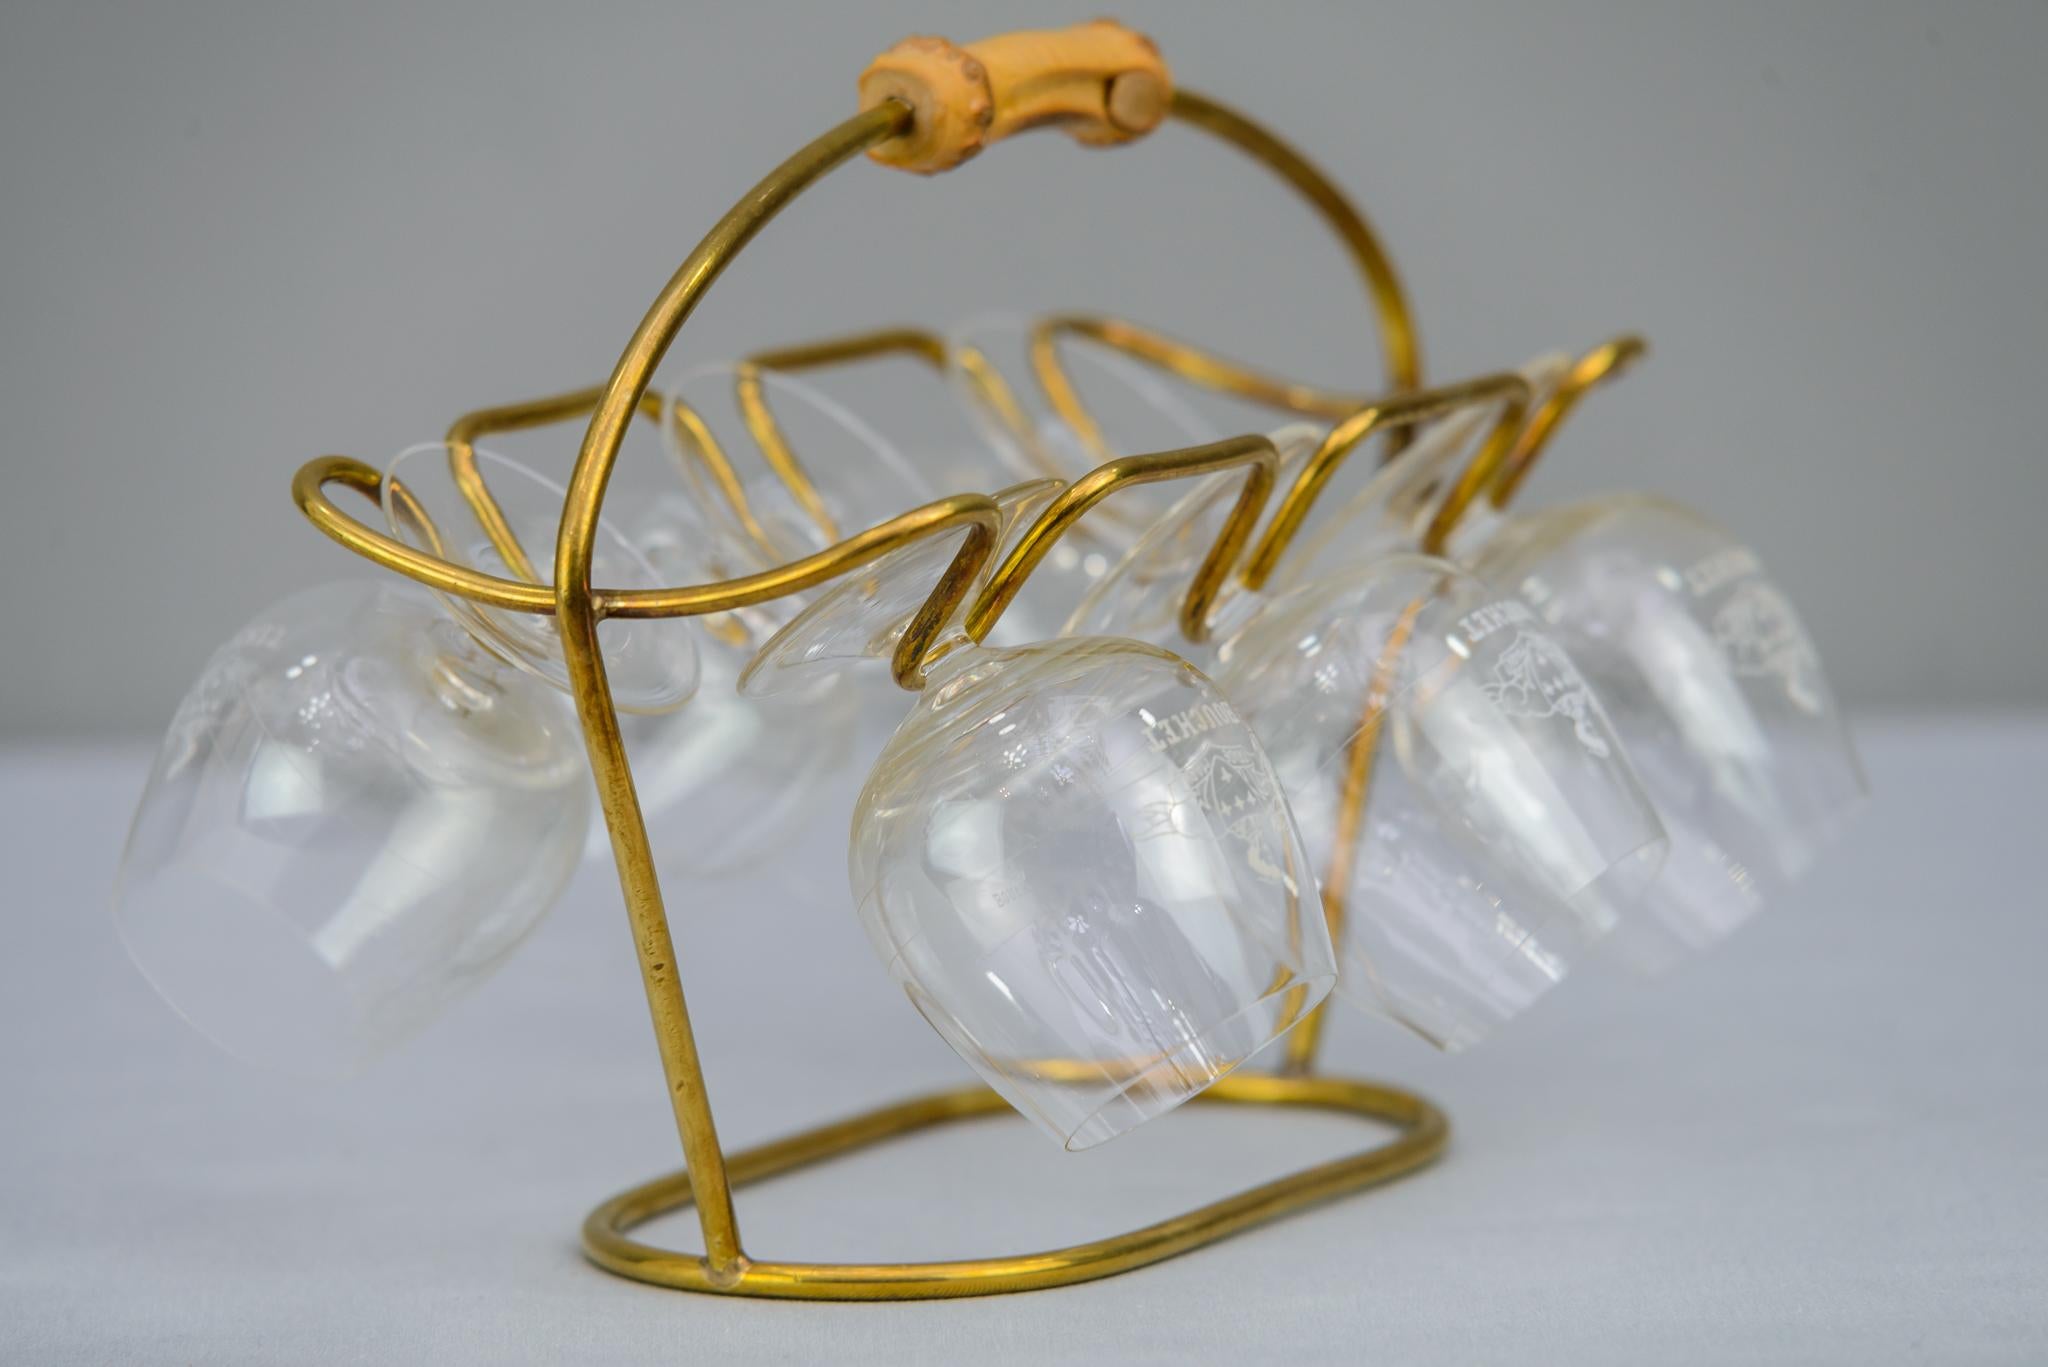 Weinglashalter, ca. 1950er Jahre
Originalzustand
Brillen sind im Lieferumfang enthalten.